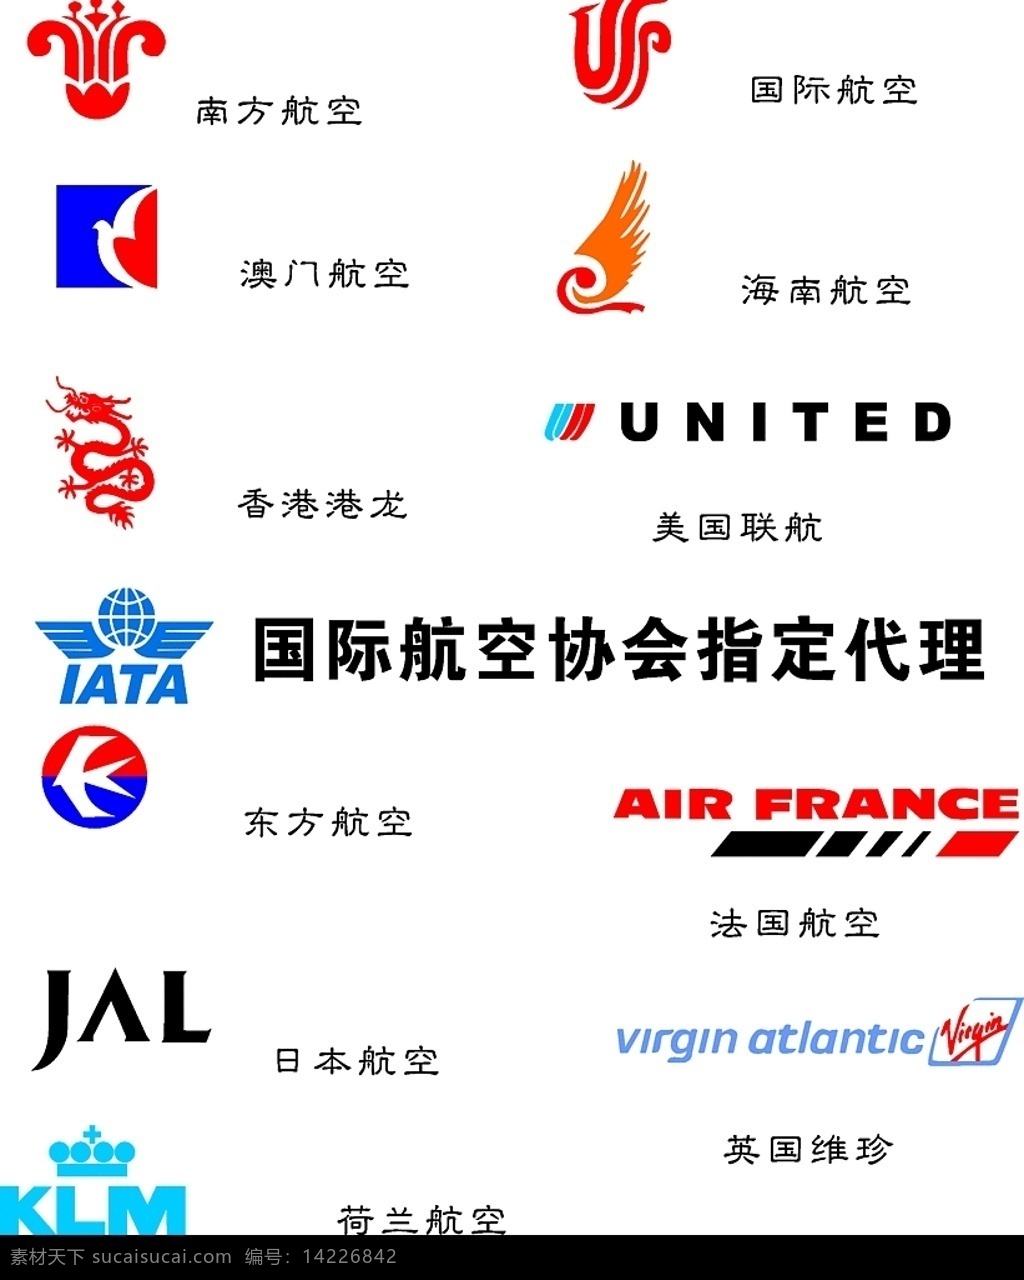 航空公司 logo 航空 航天 公司 标志 标识标志图标 企业 航空标志大全 矢量图库